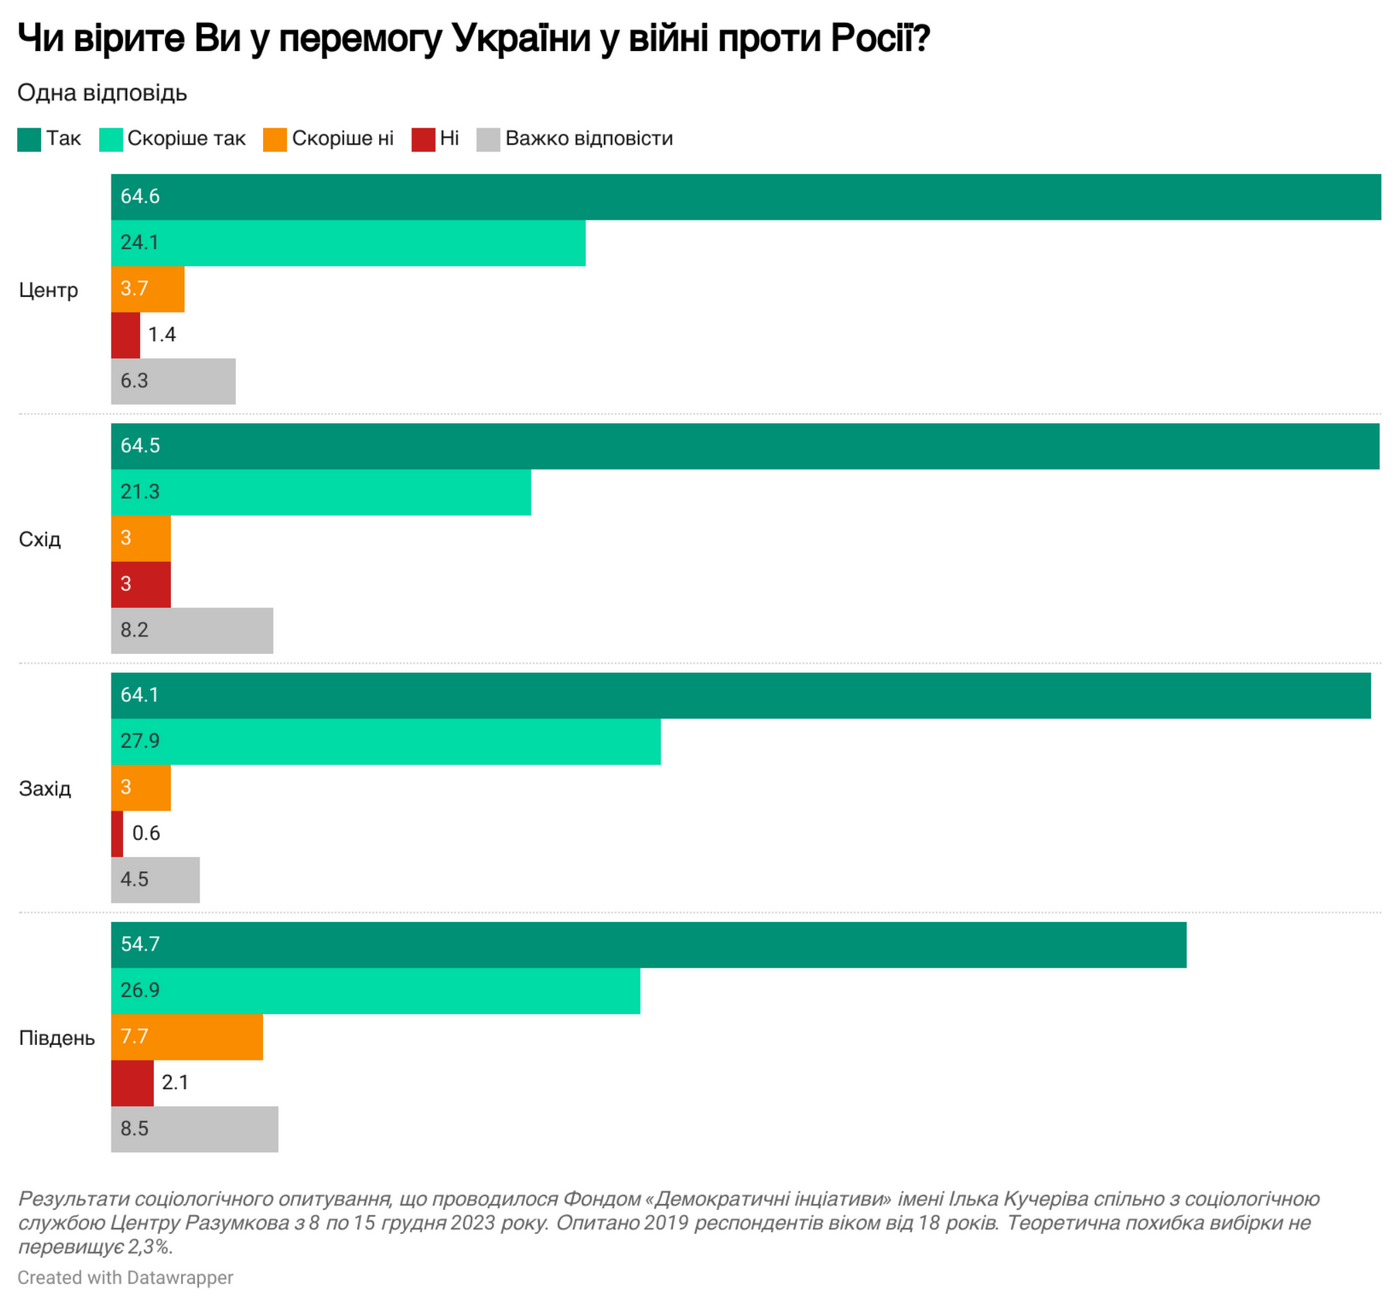 Почти 90% украинцев верят в победу, больше половины ожидают краткосрочного успеха в войне: результаты опроса